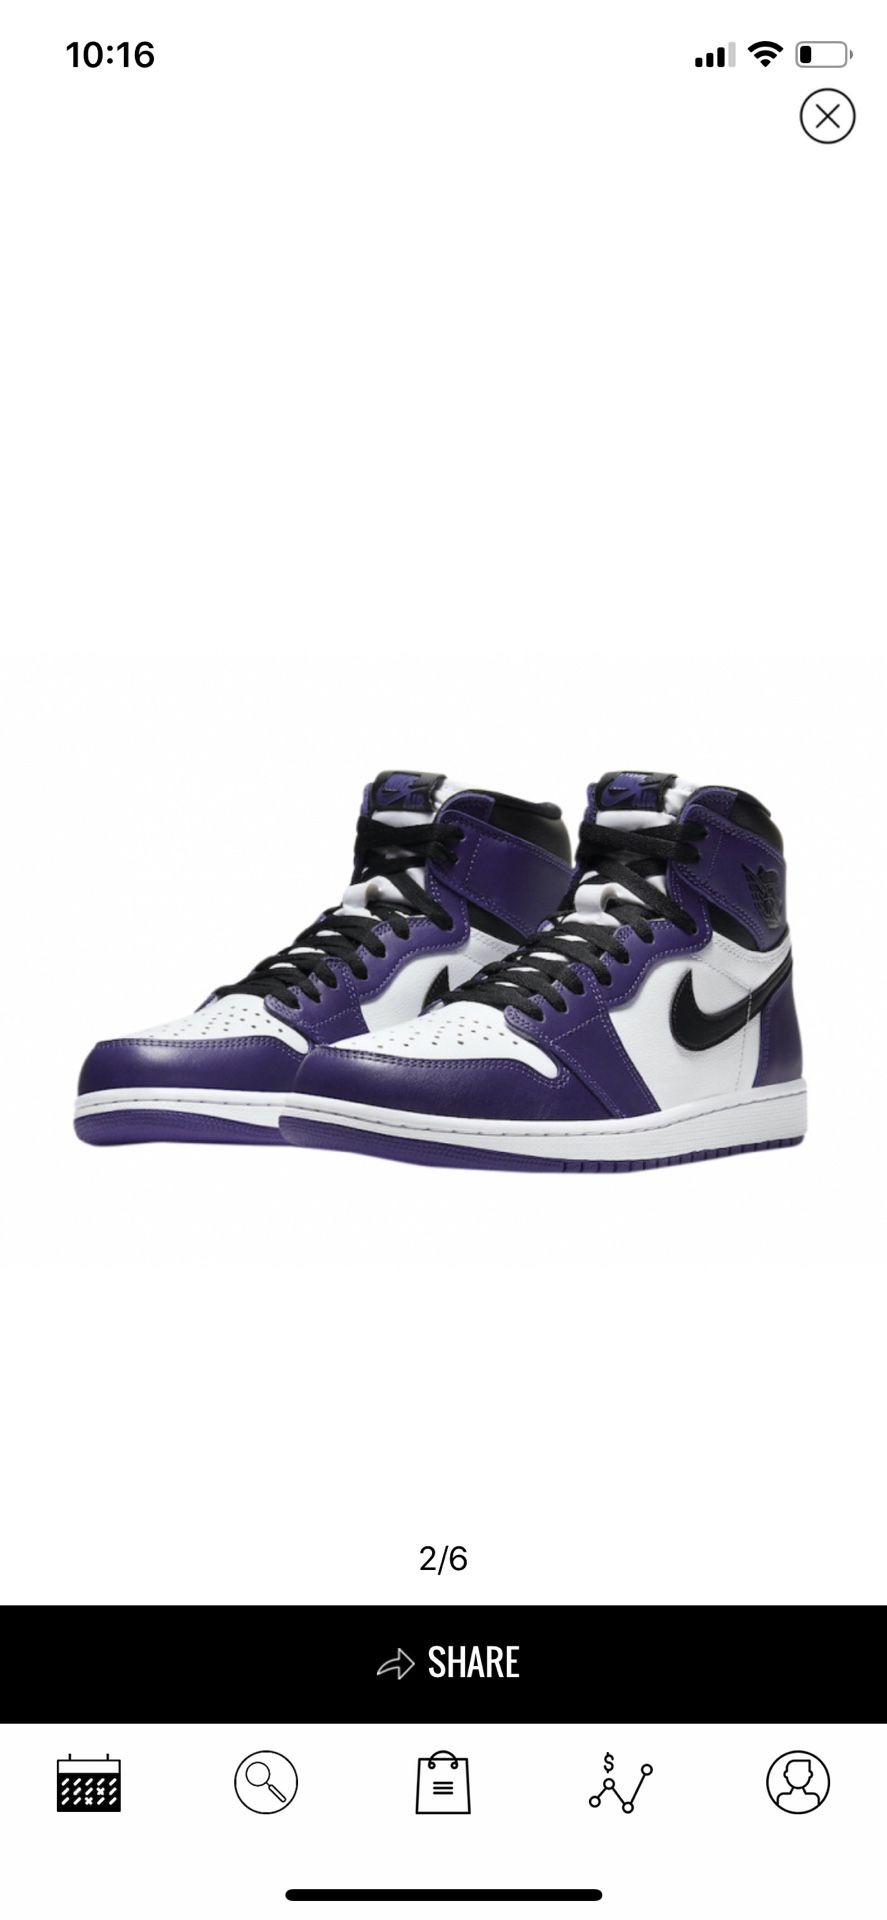 Air Jordan 1 high OG White Purple